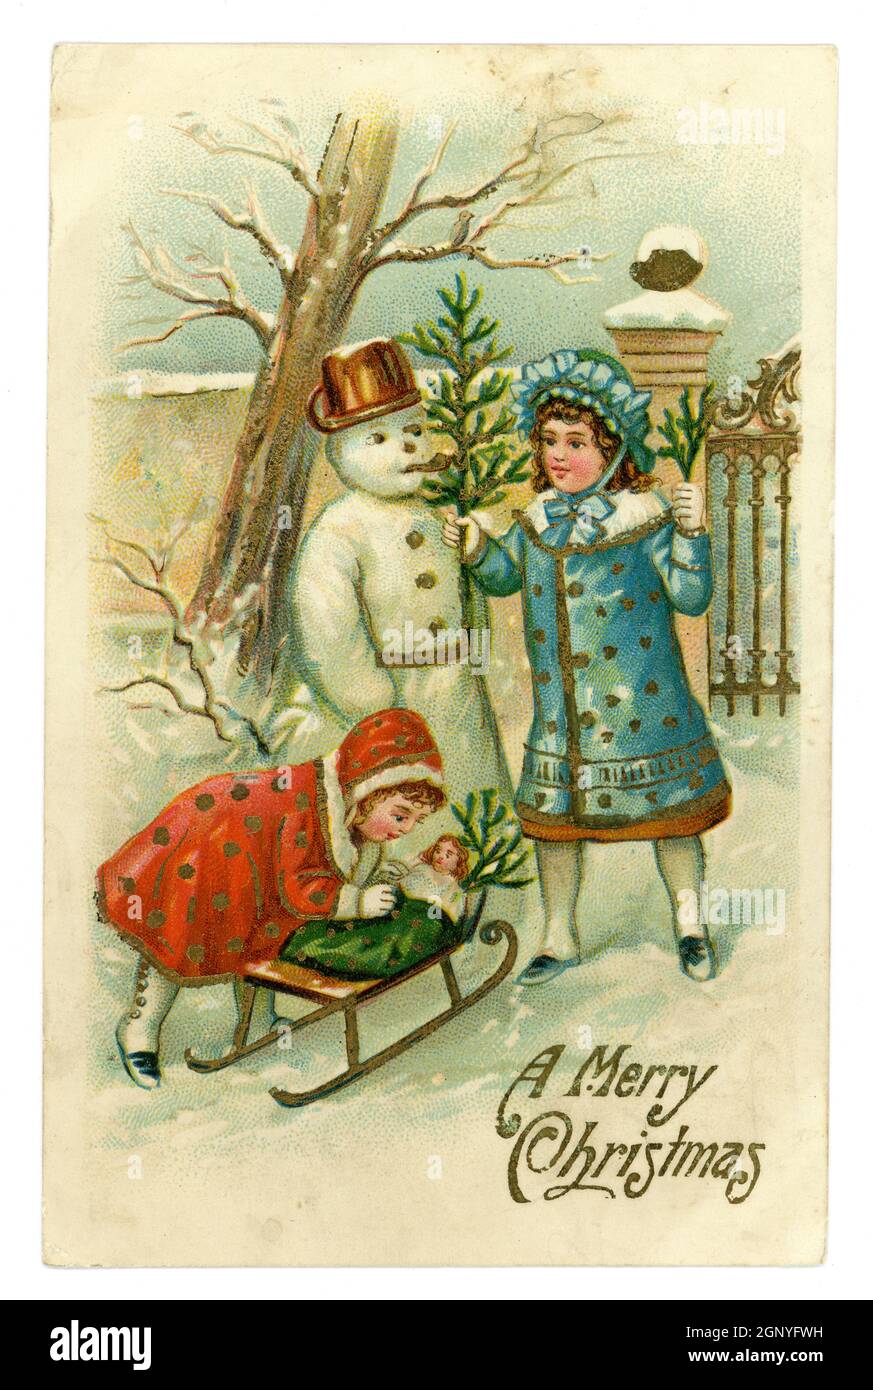 Original tarjeta de felicitación de Navidad de la era eduardiana británica en relieve, niñas jóvenes con una muñeca en un trineo en su jardín construyendo un muñeco de nieve, publicado por A.S.B. impreso en Alemania, alrededor de 1910 Foto de stock